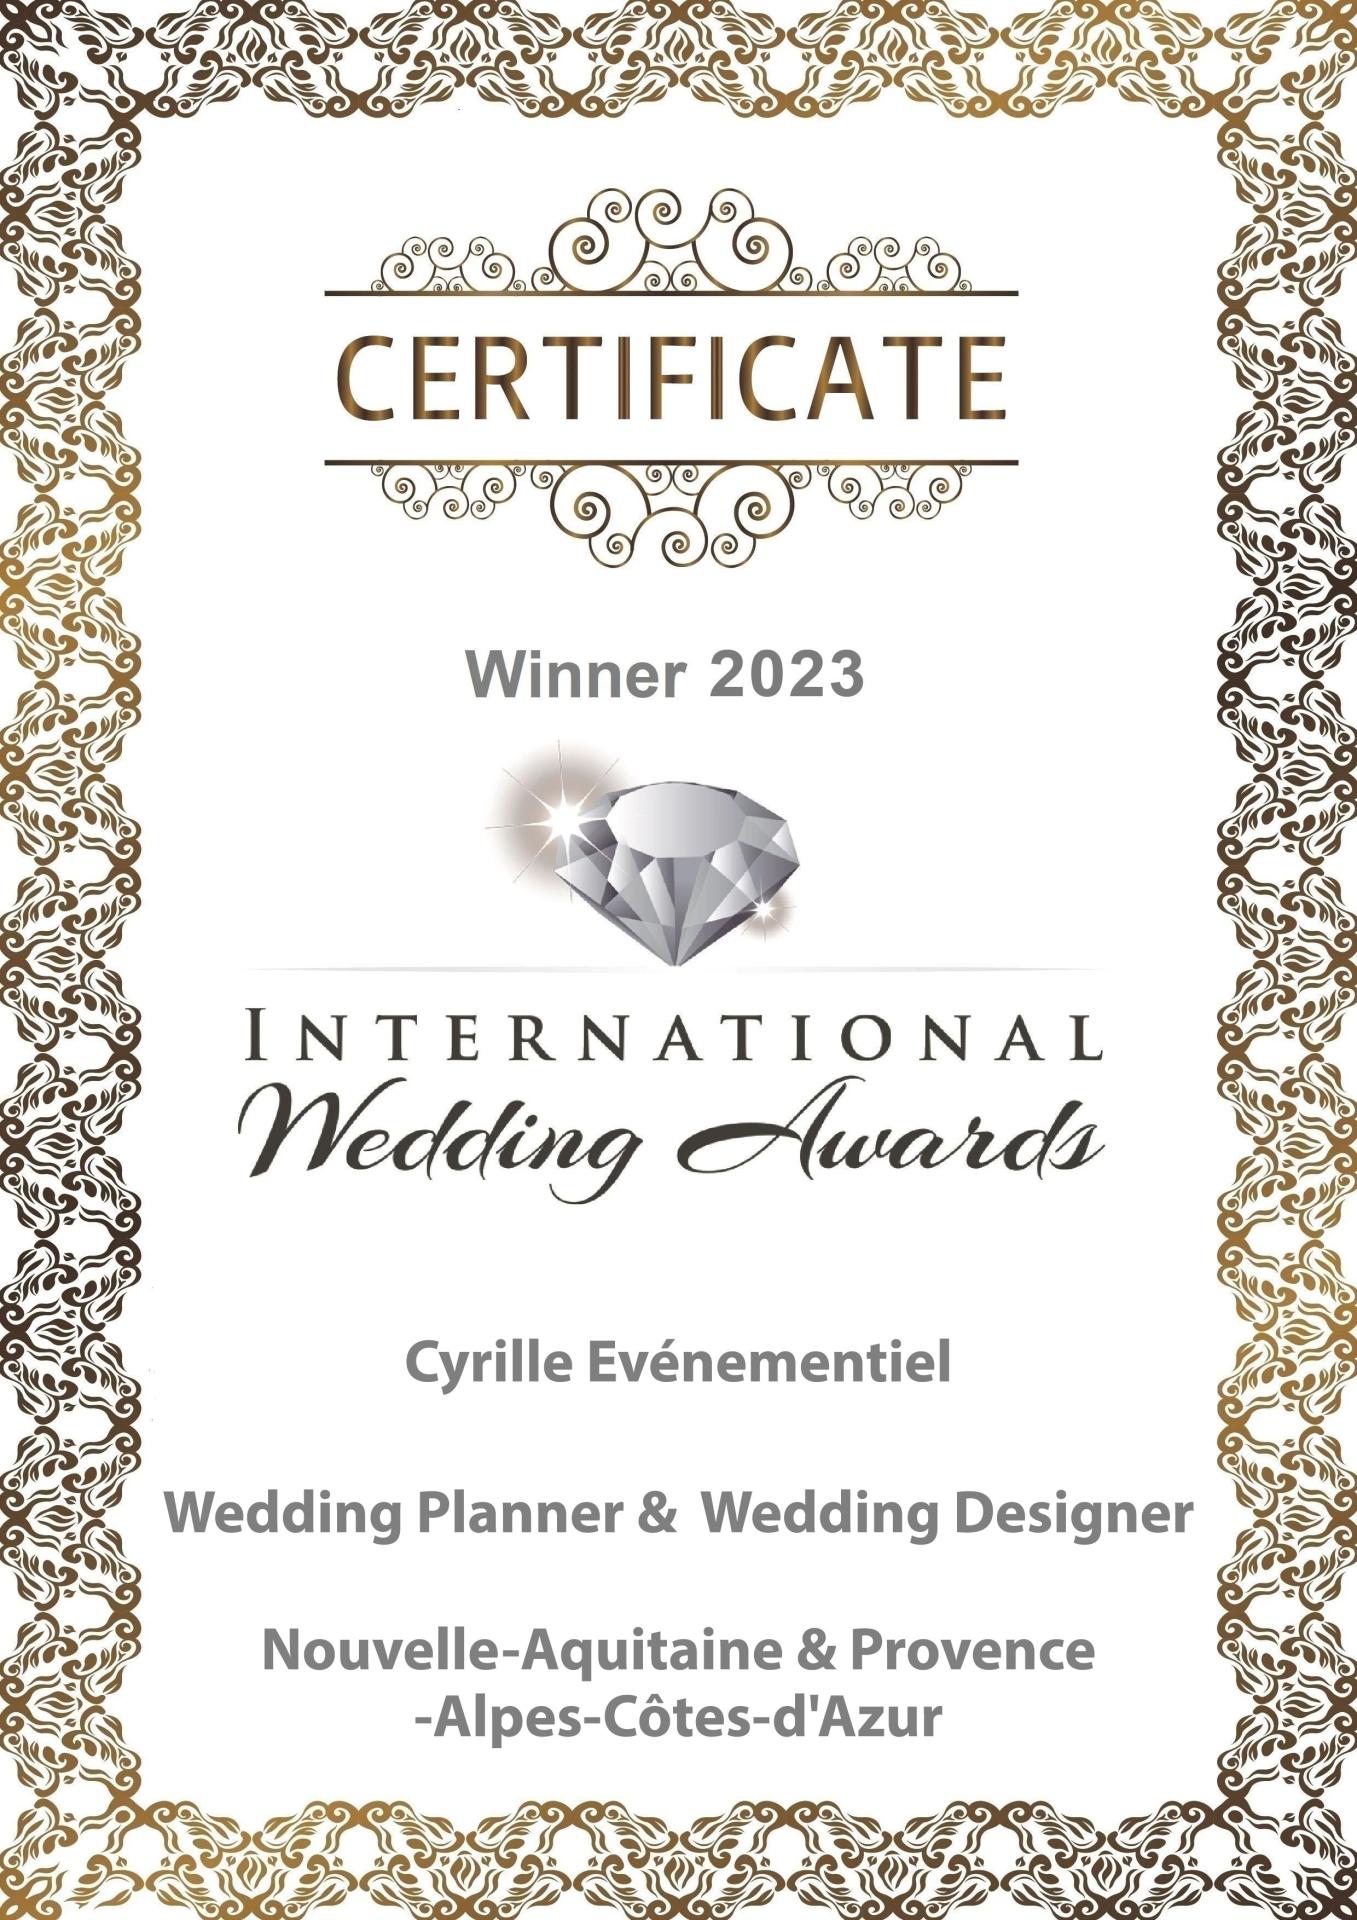 International wedding Awards Cyrille Evenementiel 2023